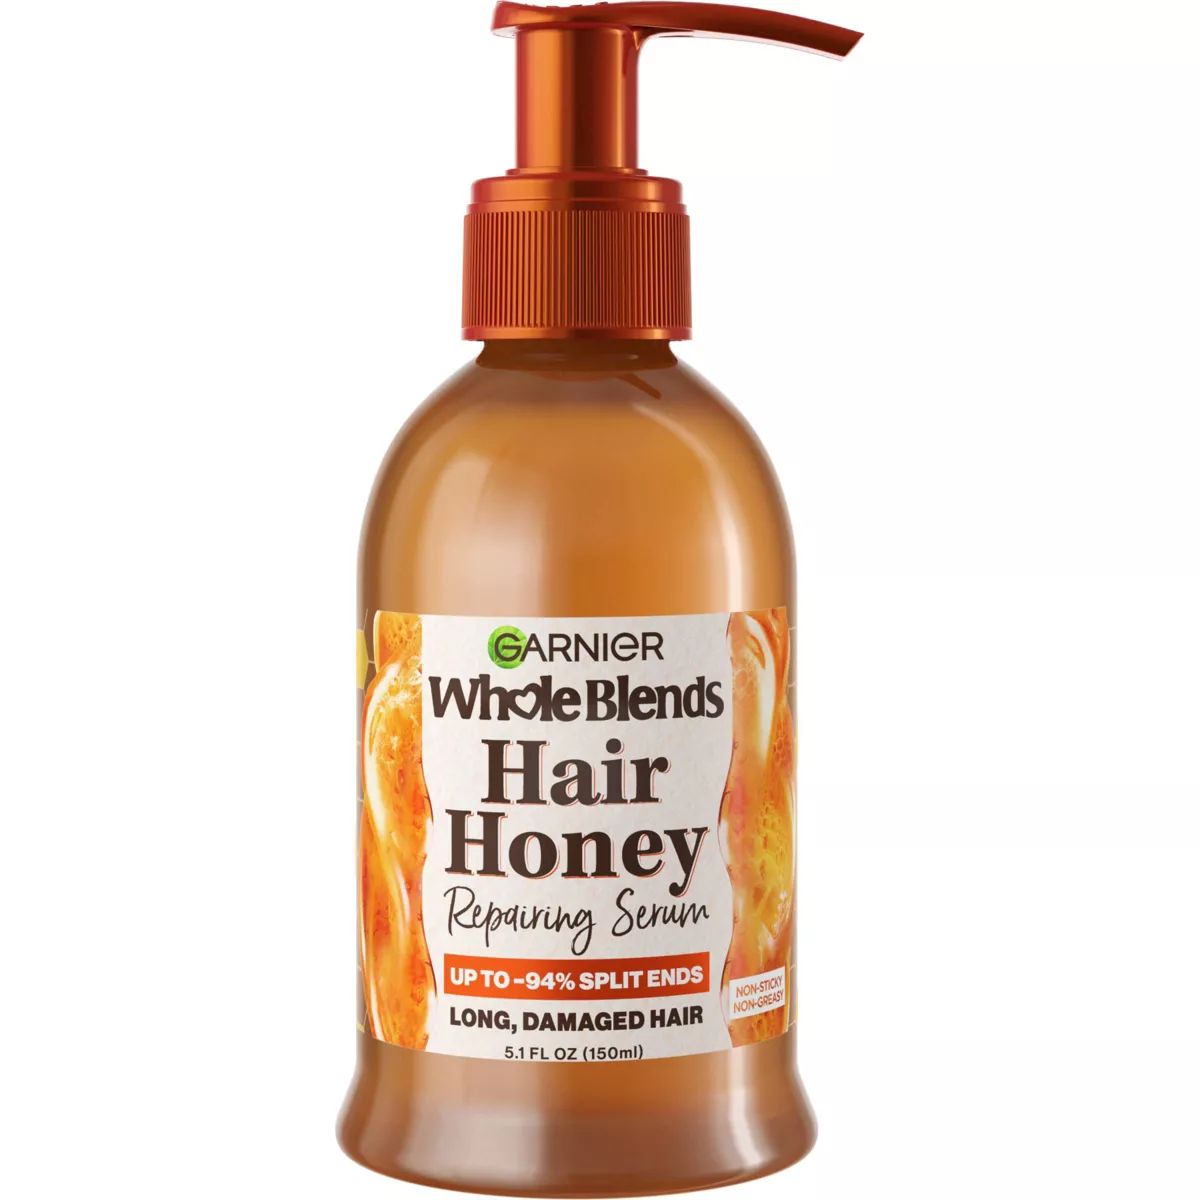 Garnier Whole Blends Honey Treasures Hair Repairing Leave-In Serum - 5.1 fl oz | Target